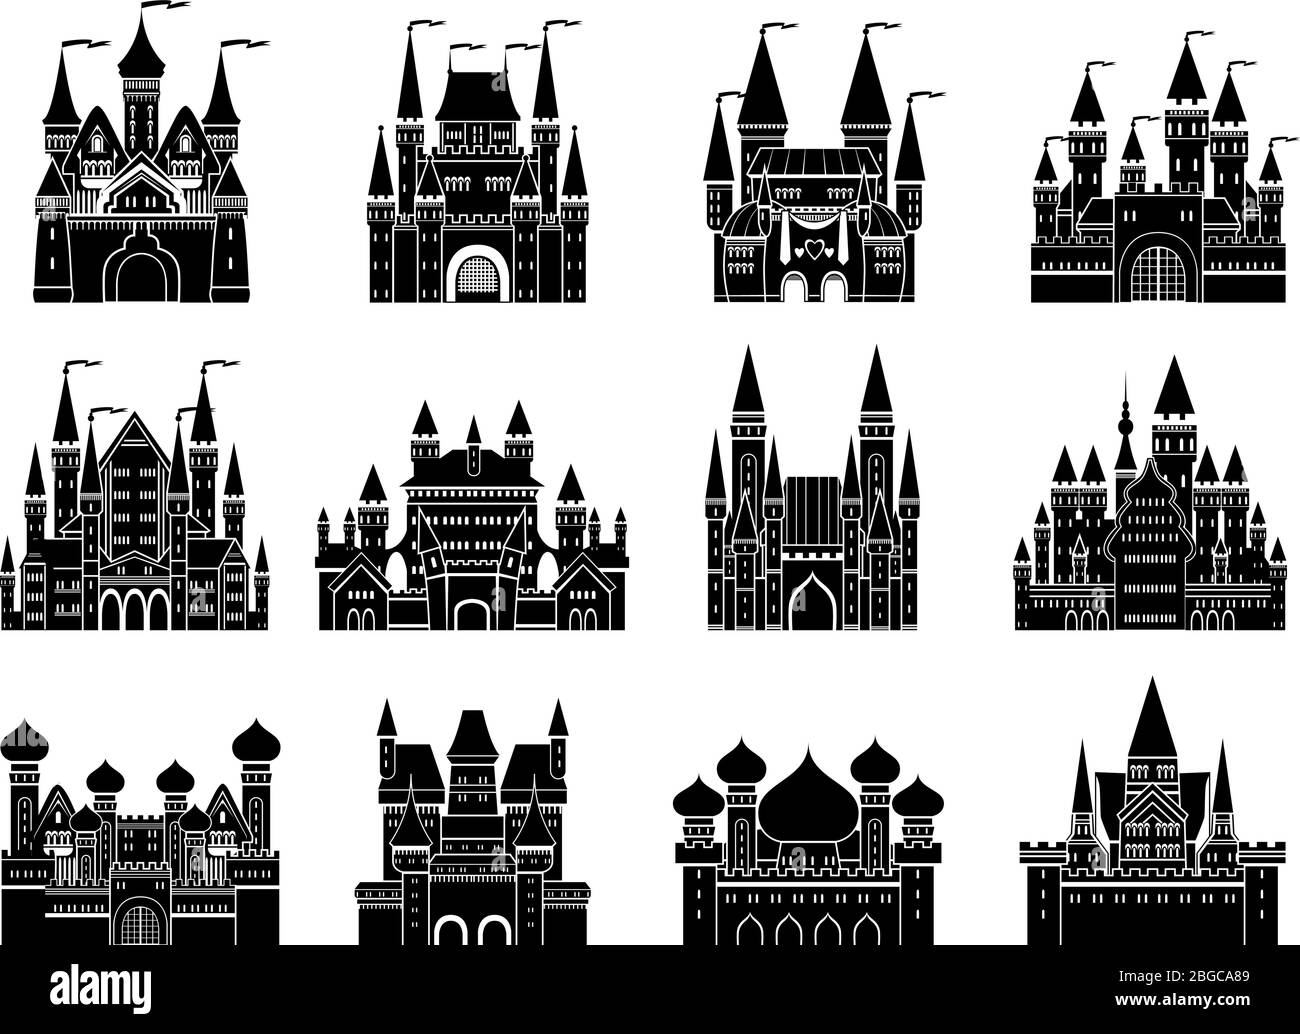 Ilustraciones vectoriales monocromas con diferentes castillos y torres medievales Ilustración del Vector